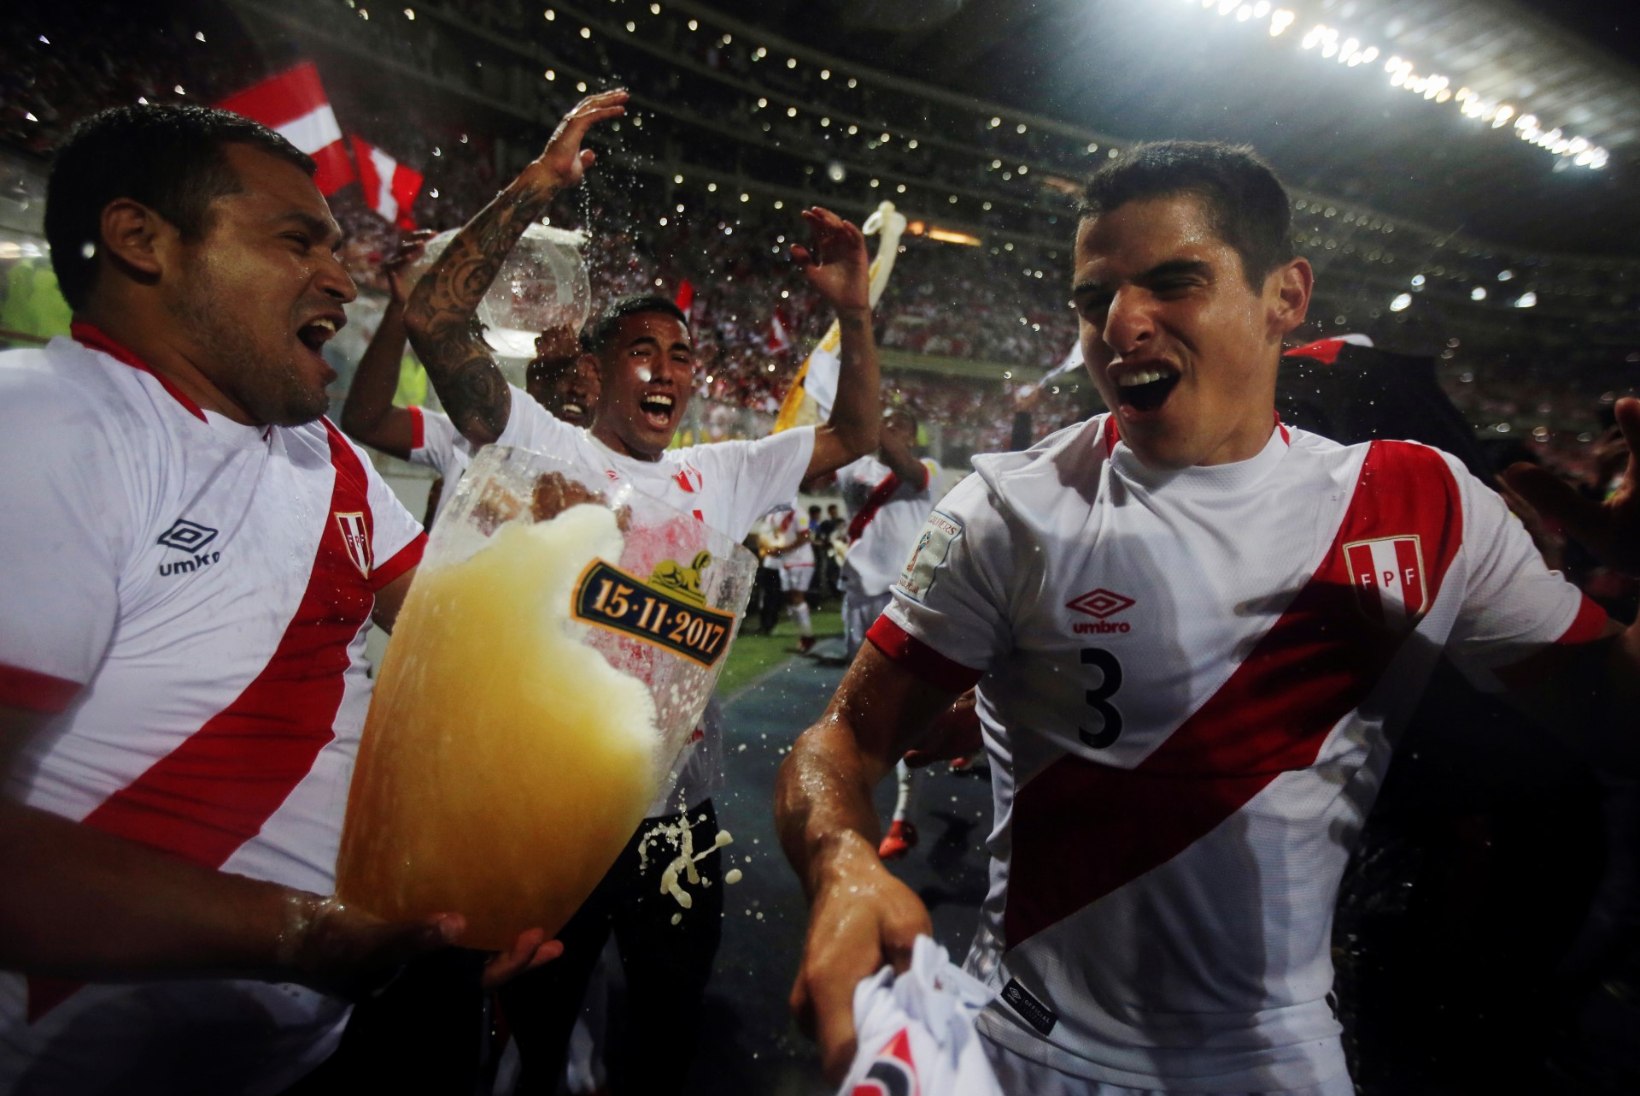 Viimasena pääses MM-finaalturniirile Peruu